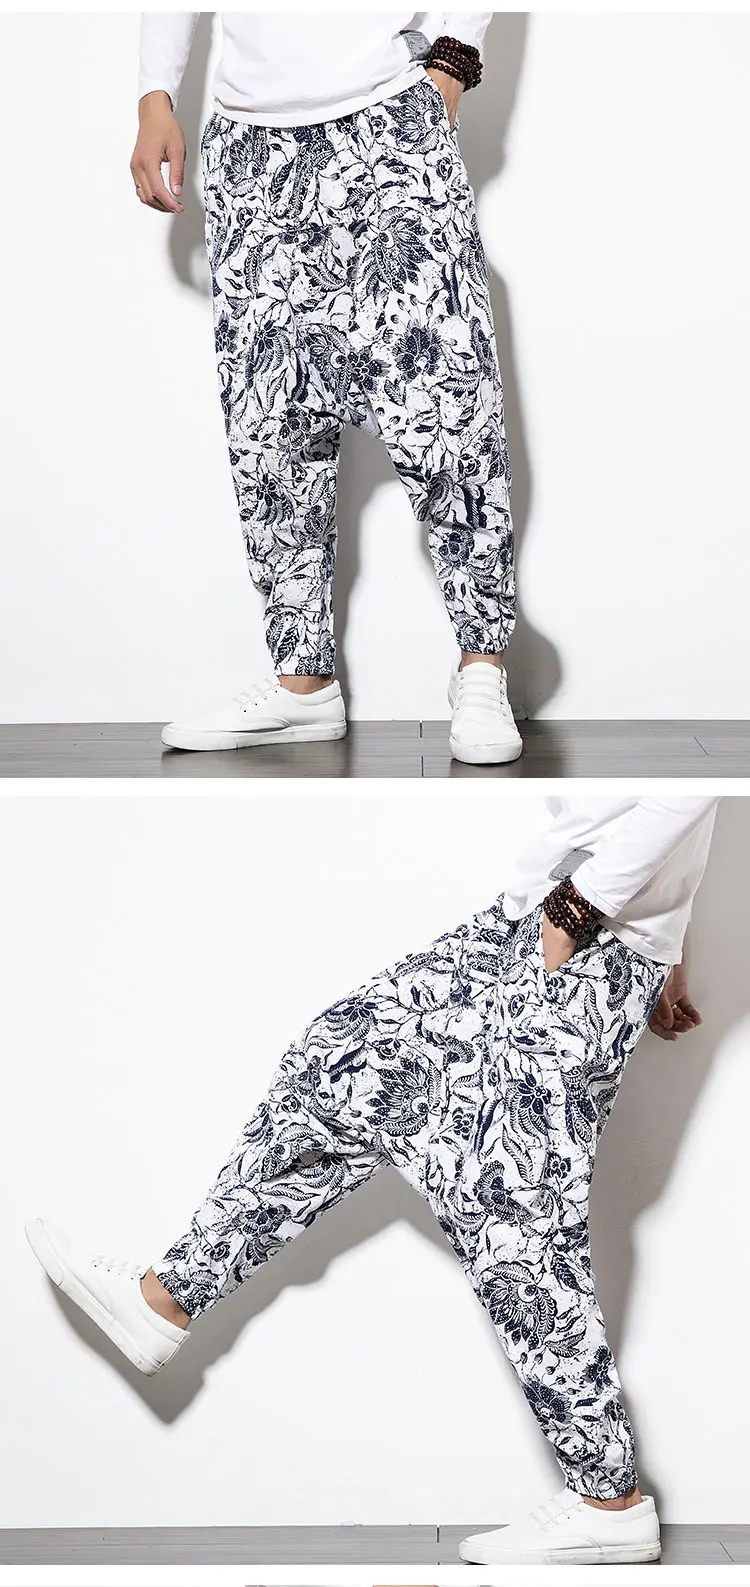 Мужские брюки-шаровары из хлопка и льна в стиле хип-хоп с эластичной резинкой на талии, Свободные мешковатые шаровары с принтом, широкие брюки в китайском стиле, размер M-5XL